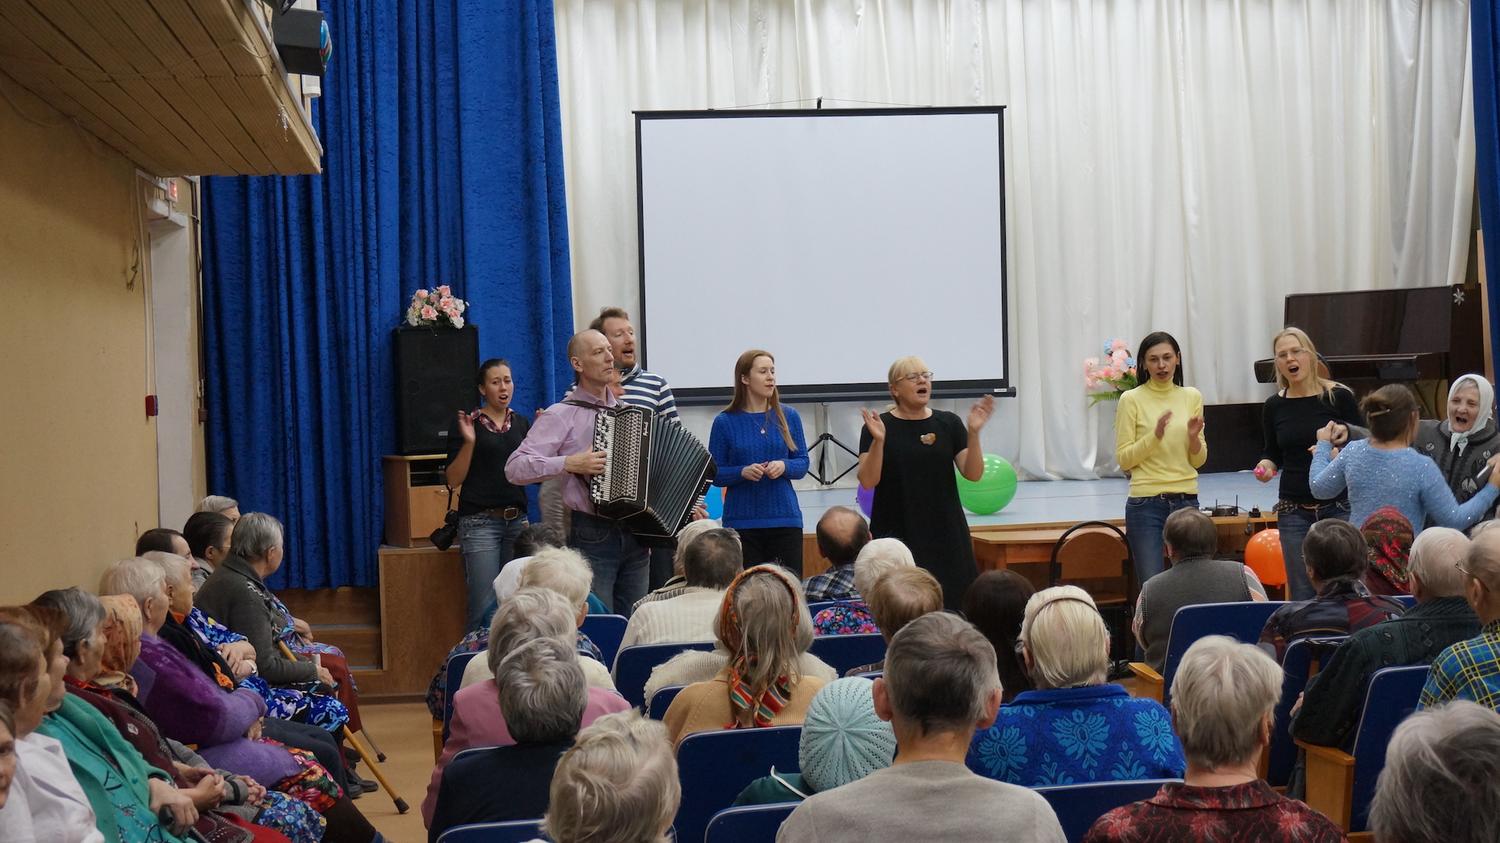 18 ноября 2017 года волонтерским движением благотворительного фонда "Старость в радость" организован концерт для проживающих Вышневолоцкого дома-интерната для престарелых и инвалидов 
itemprop=